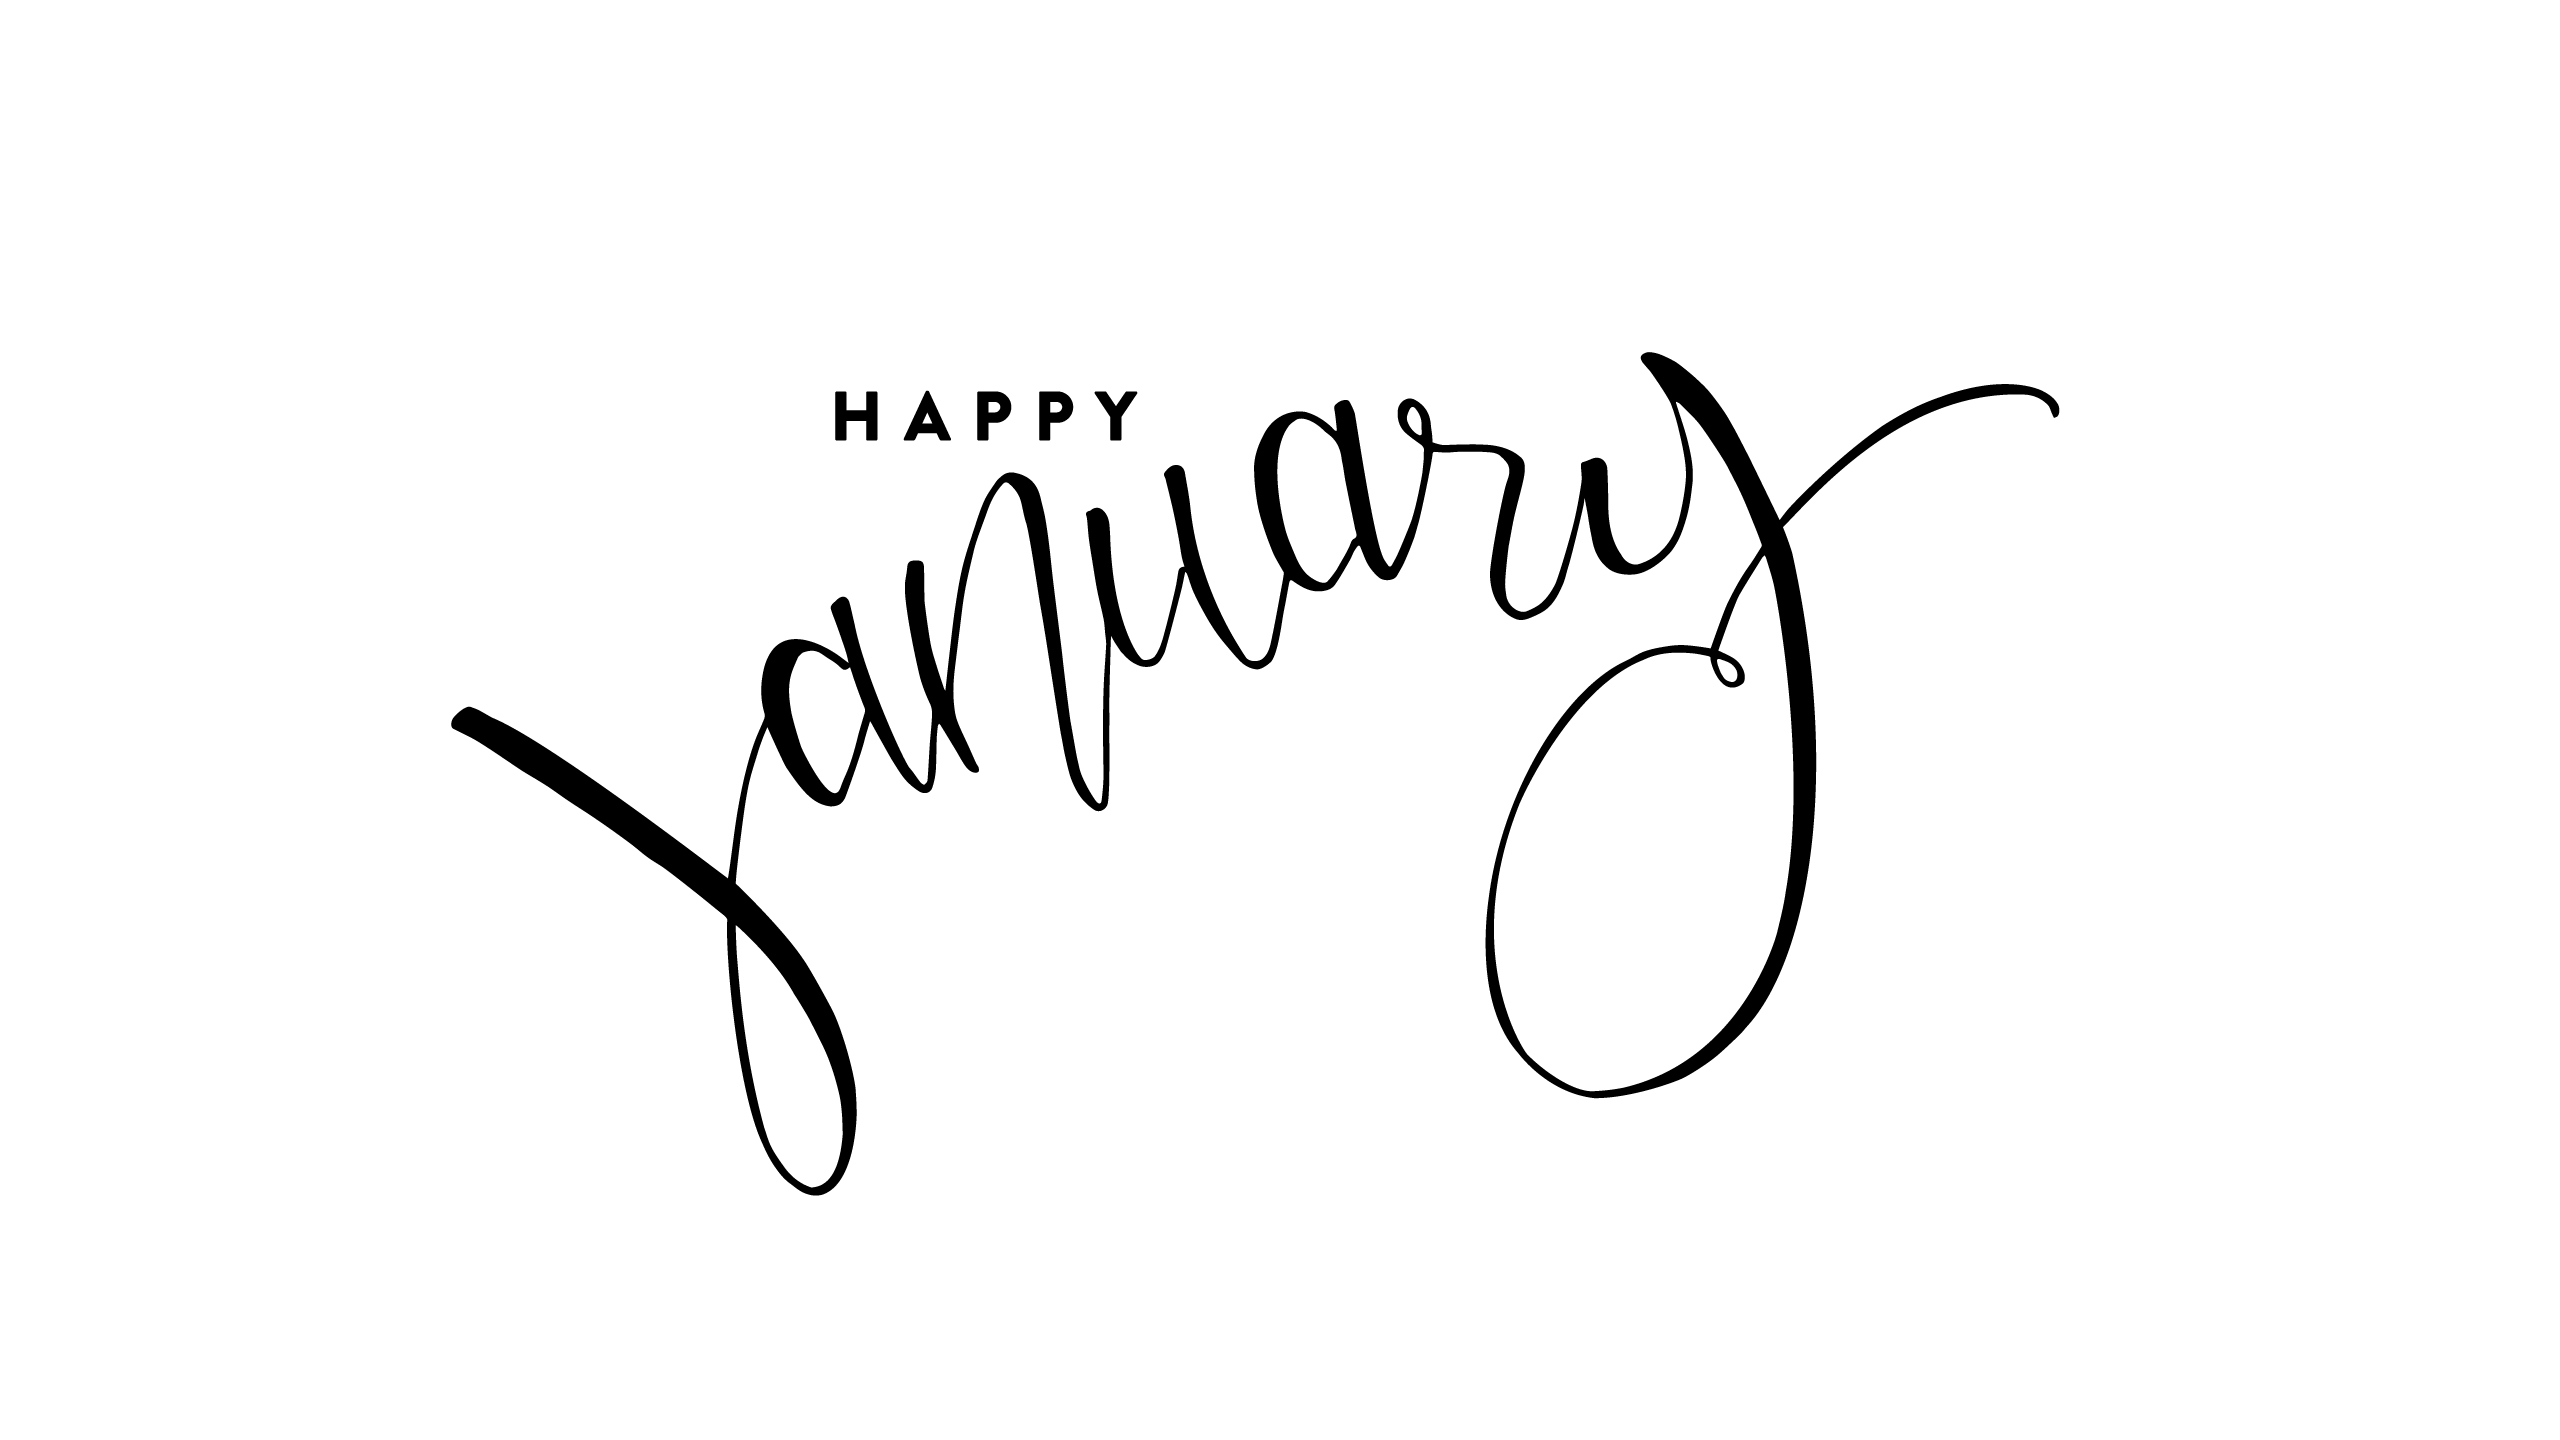 January Desktop & Phone Wallpaper. Hello january, January image, Hello january quotes